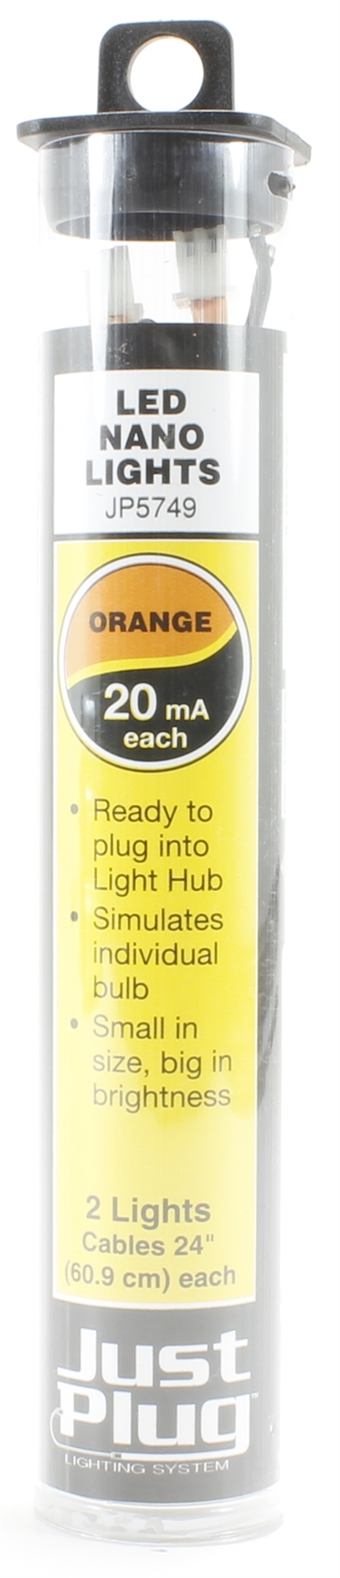 Orange LED nano lights for Just Plug lighting system